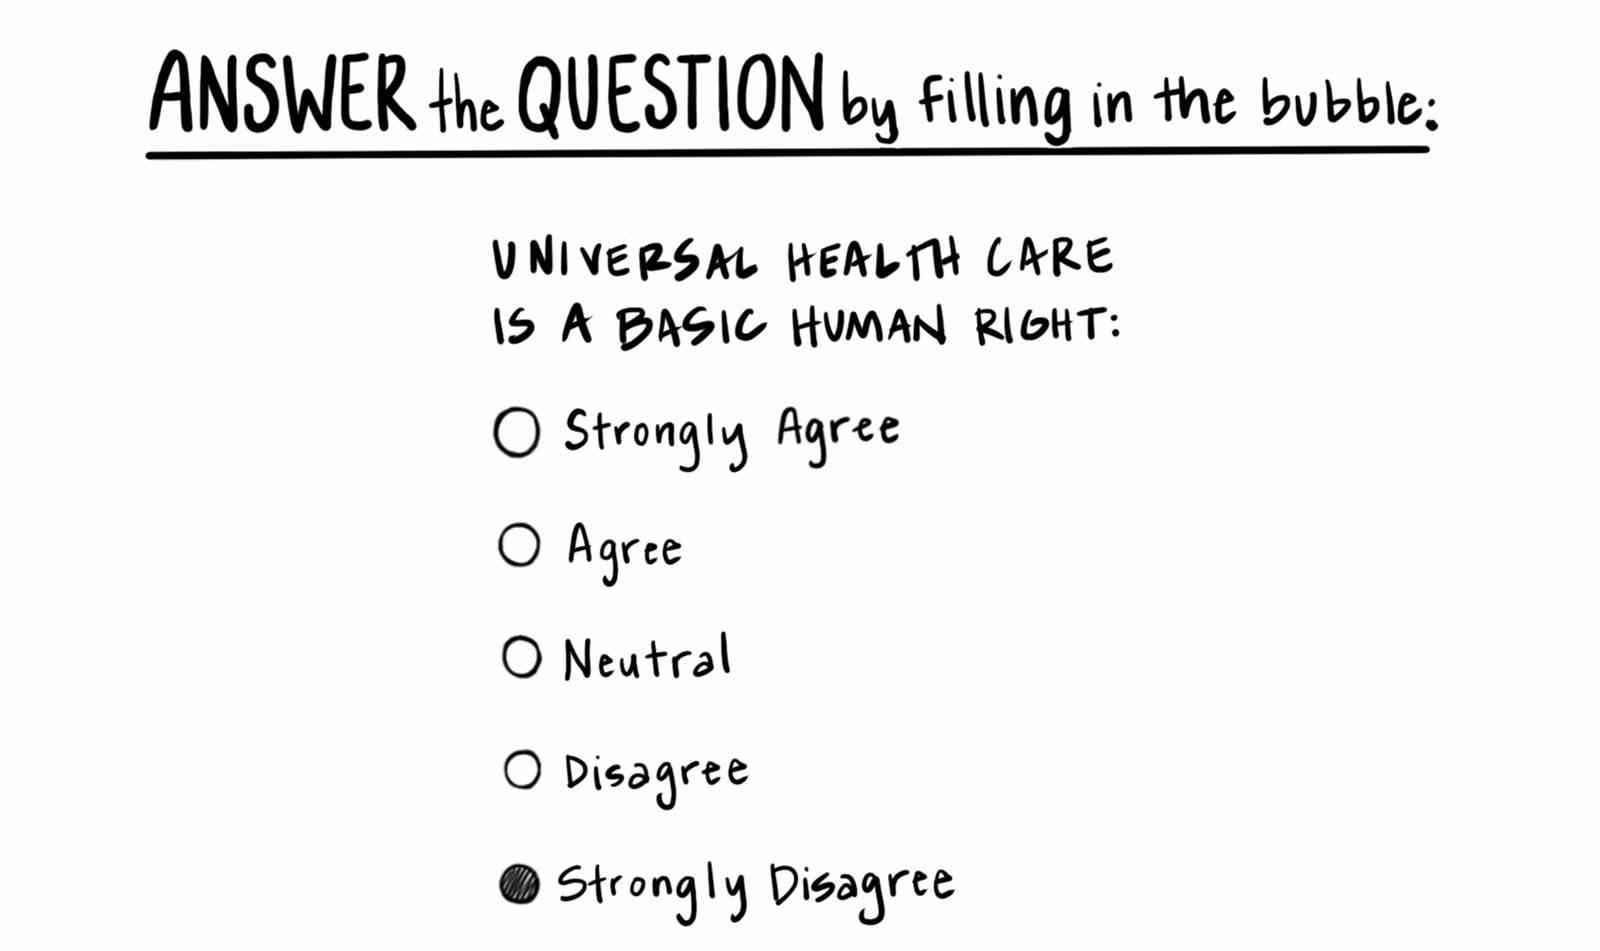 Fragebogen zur allgemeinen Gesundheitsversorgung